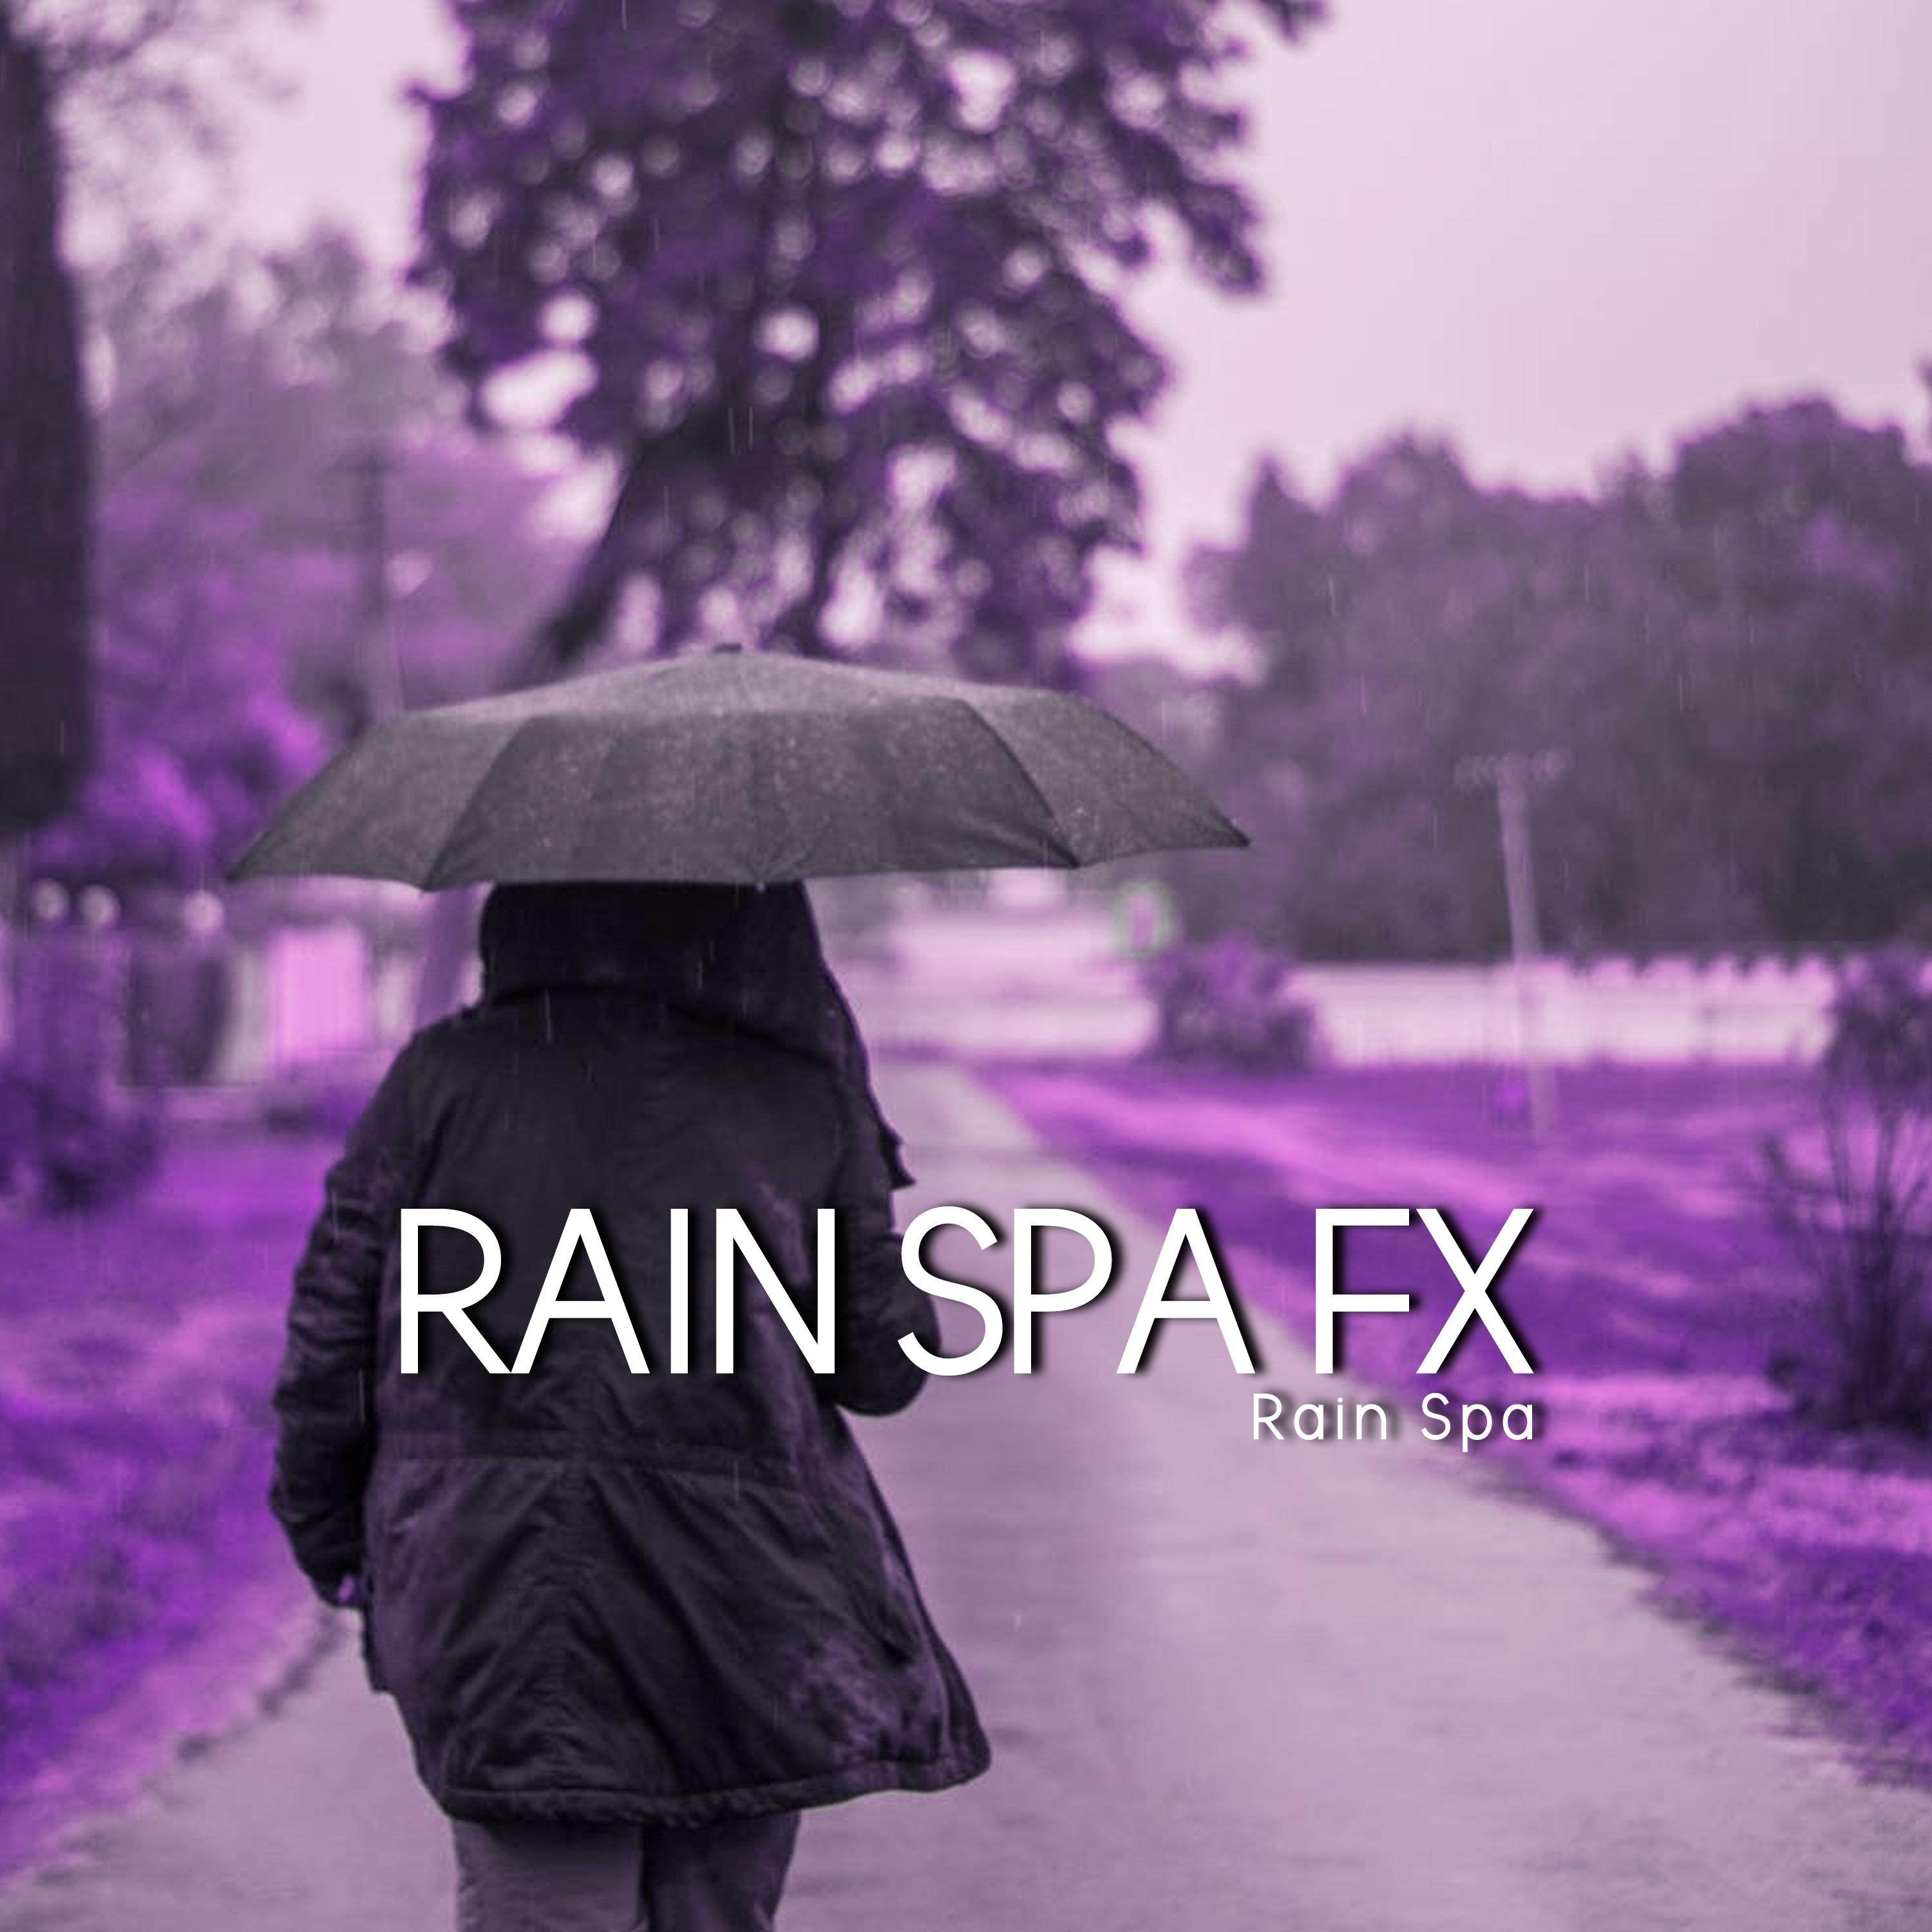 Rain Spa FX